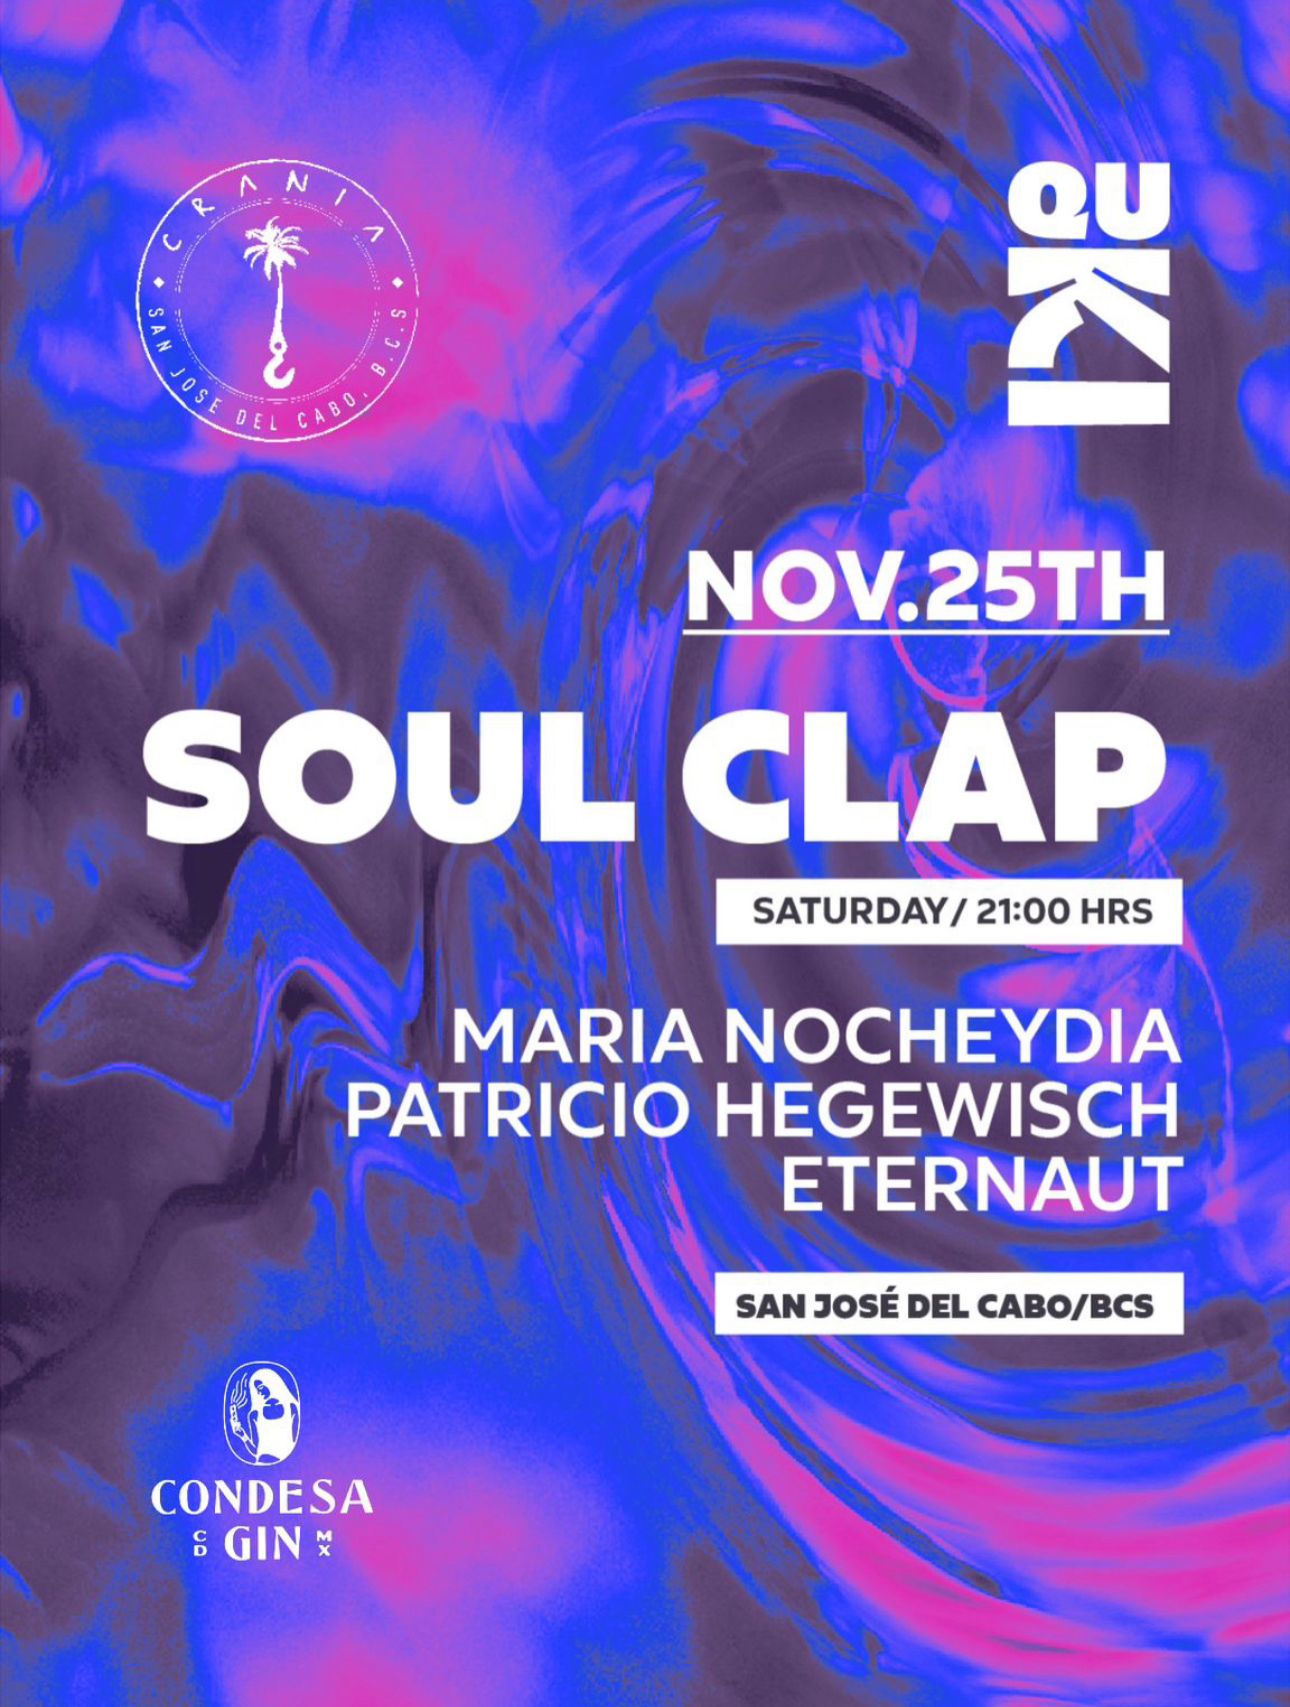 Quki - with Soul Clap at Crania Tickets | San José del Cabo | Crania ...